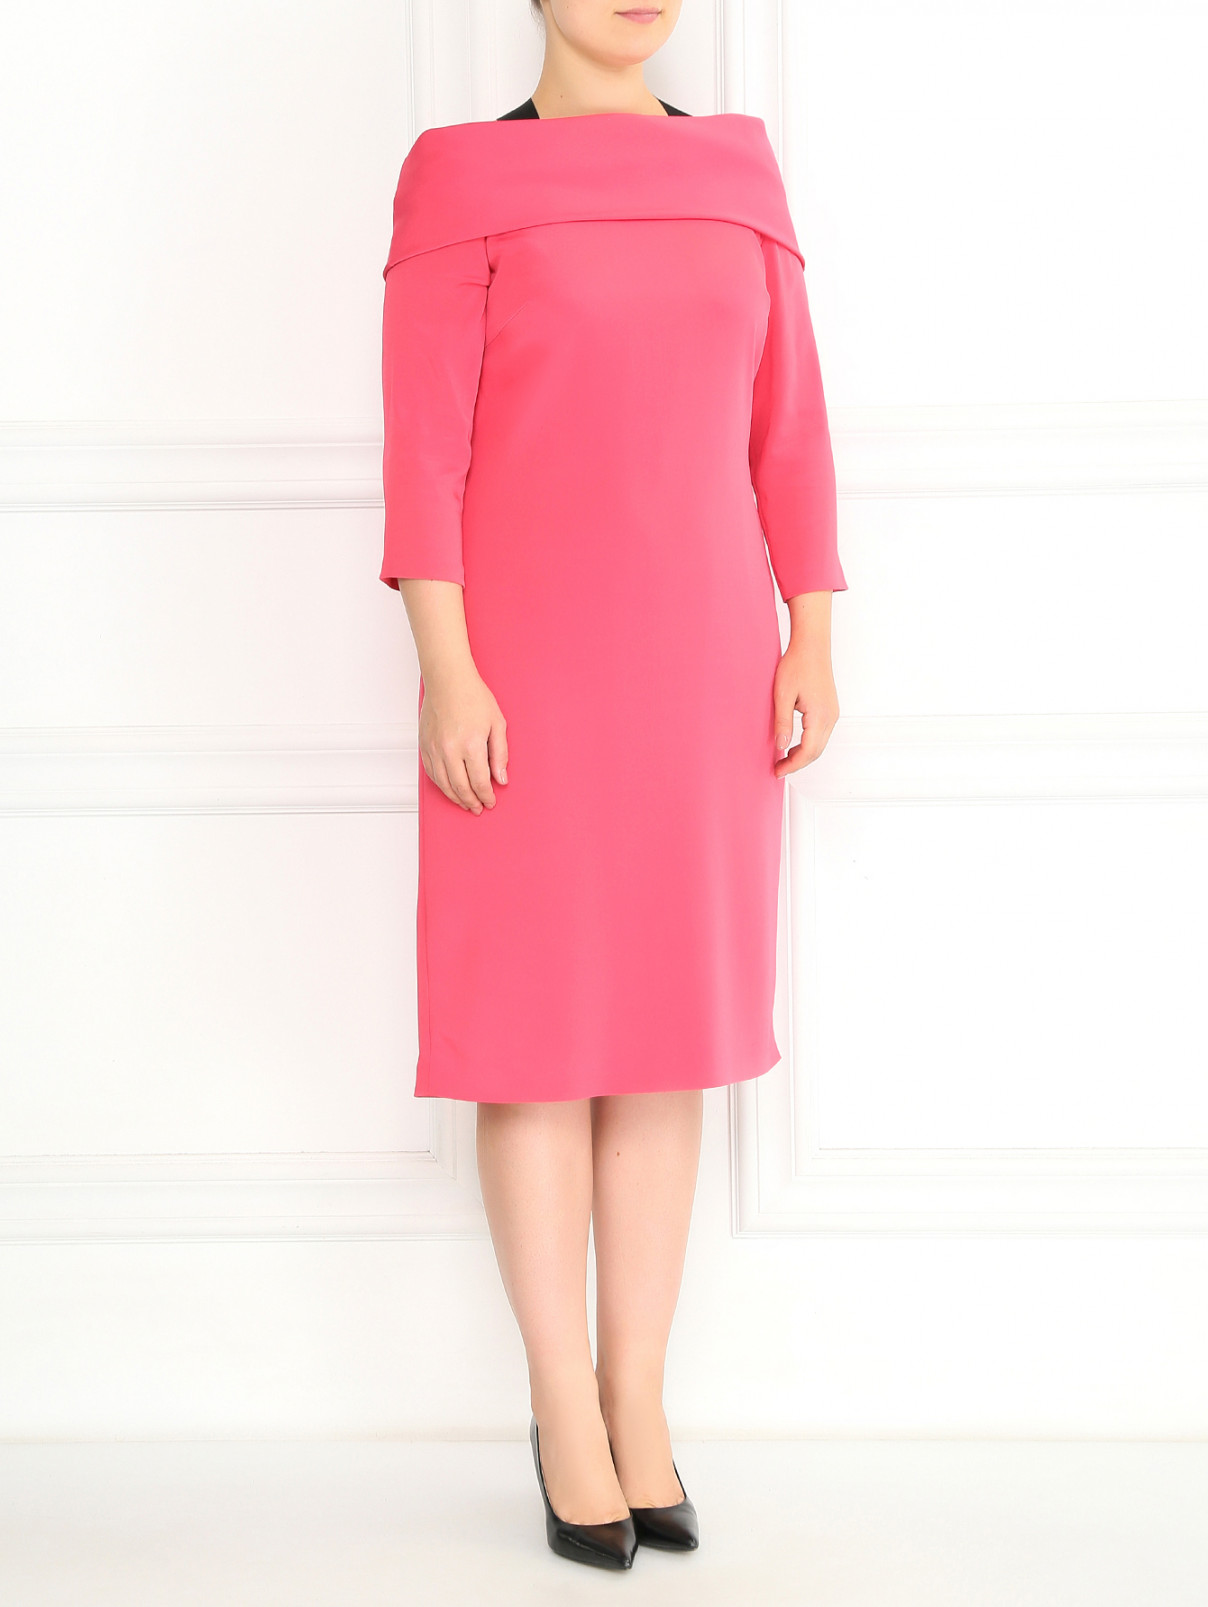 Платье-футляр с рукавами 3/4 Marina Rinaldi  –  Модель Общий вид  – Цвет:  Розовый